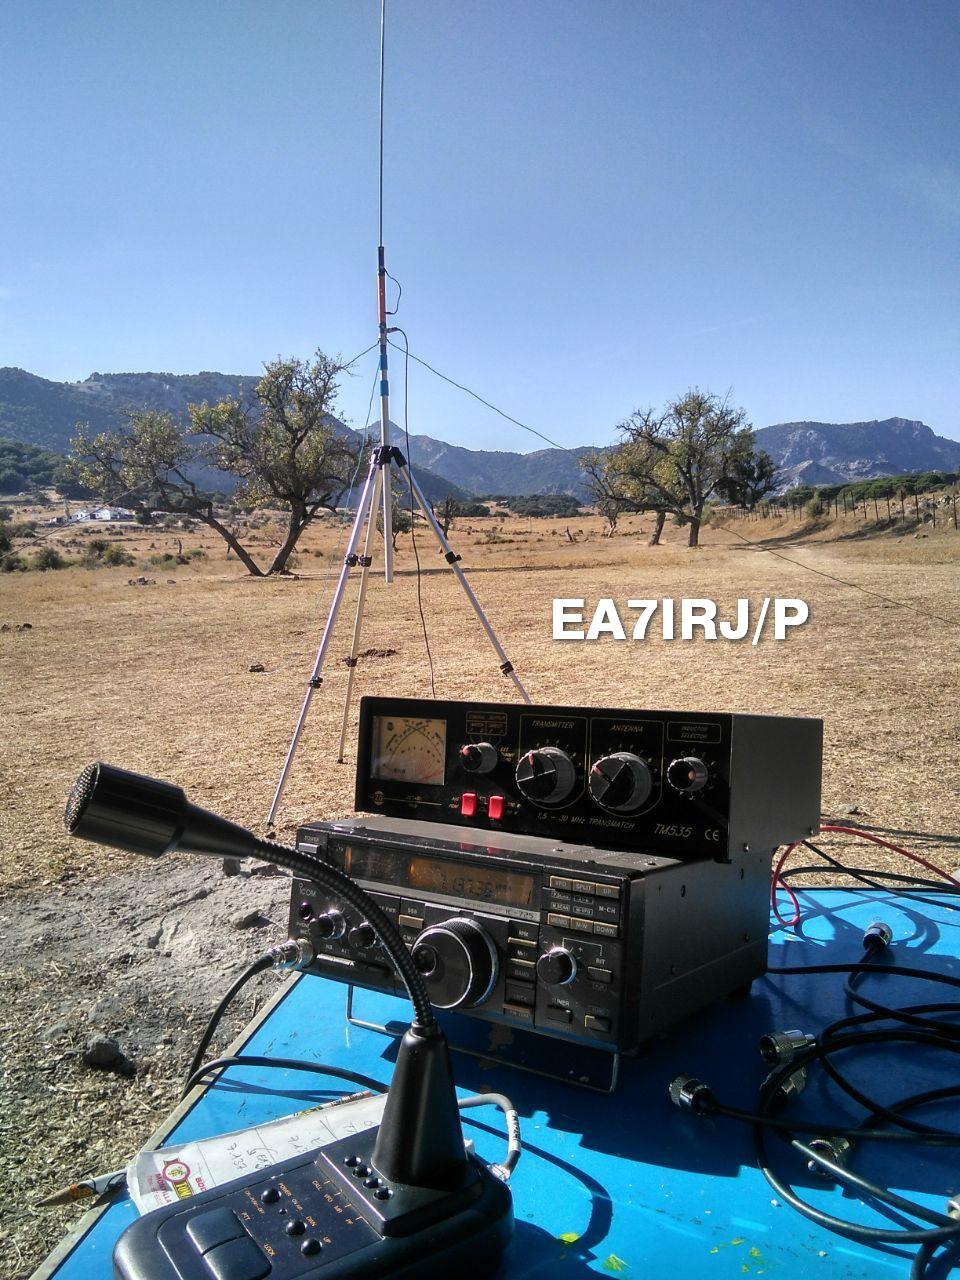 Primera operación HF en “portable” estrenando antena portátil multibanda casera